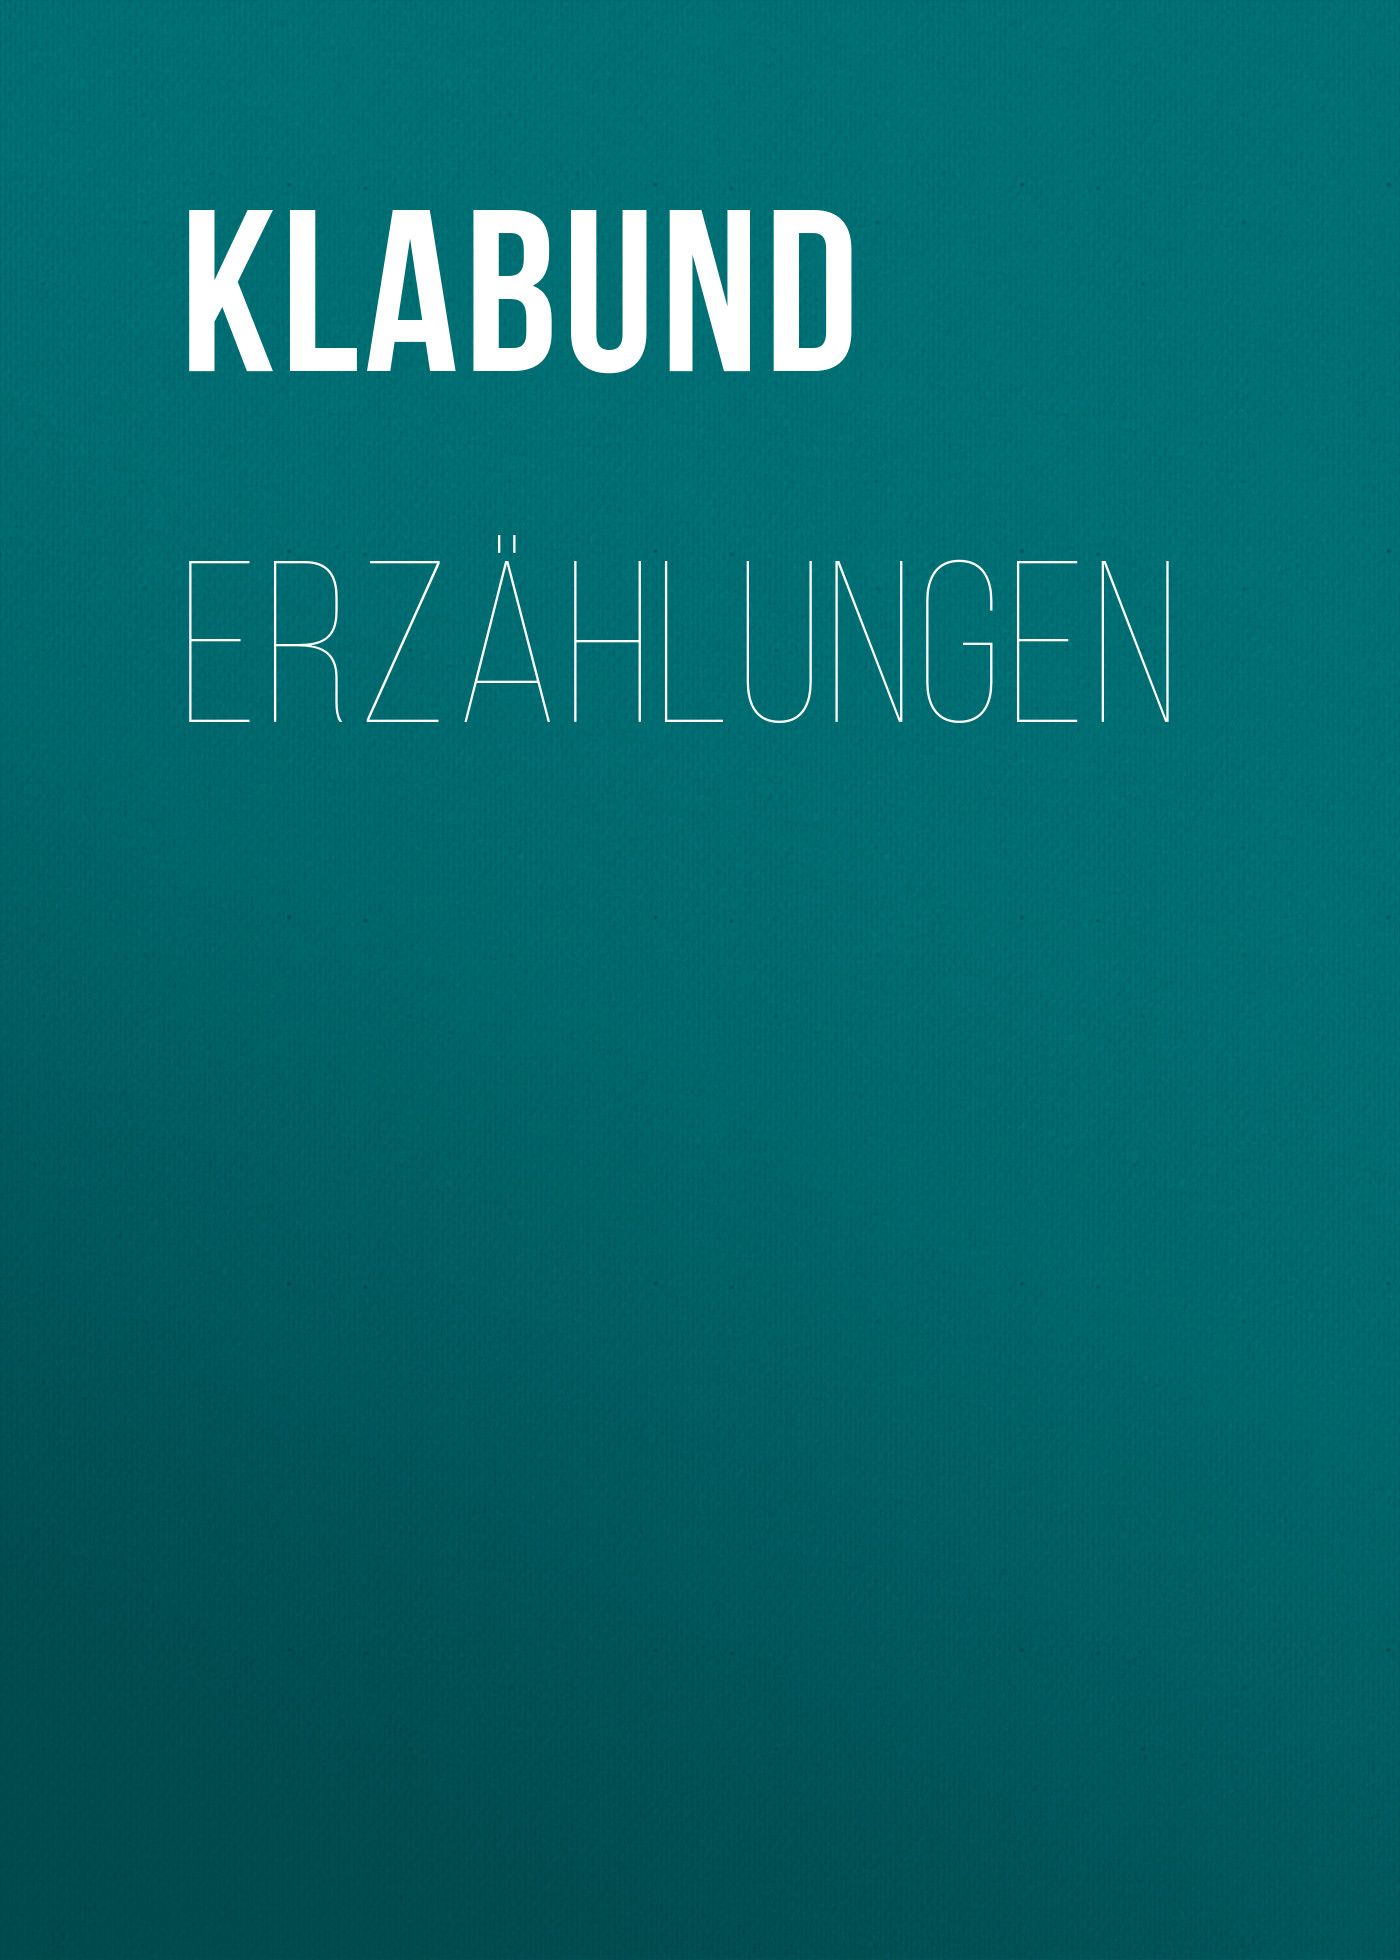 Книга Erzählungen из серии , созданная Klabund , может относится к жанру Зарубежная классика. Стоимость электронной книги Erzählungen с идентификатором 48632116 составляет 0 руб.